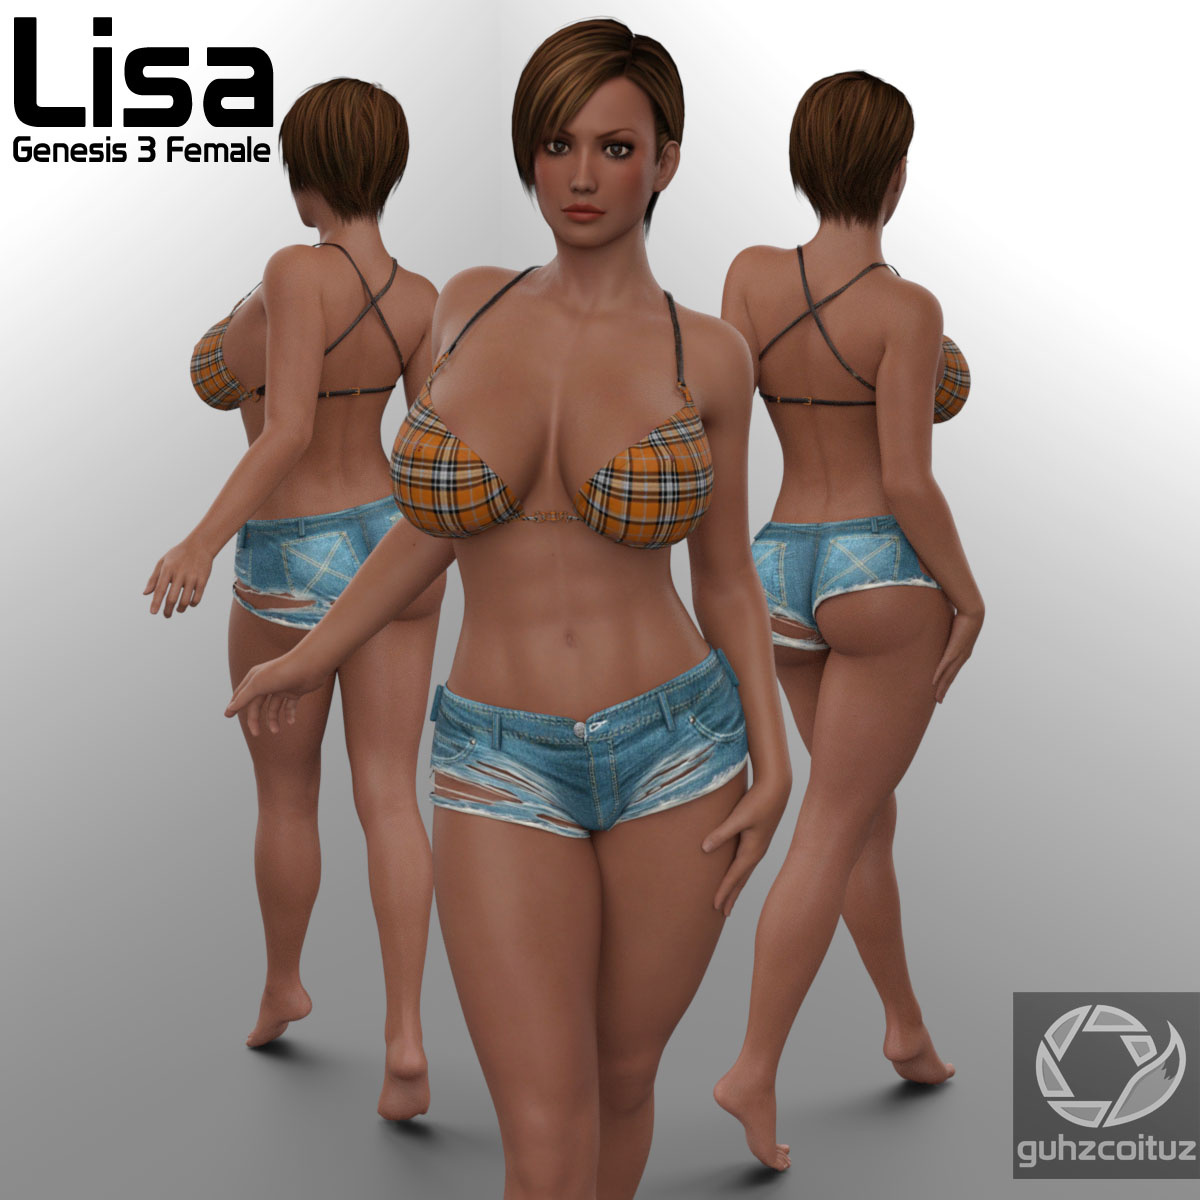 Lisa DOA for G3F_DAZ3DDL